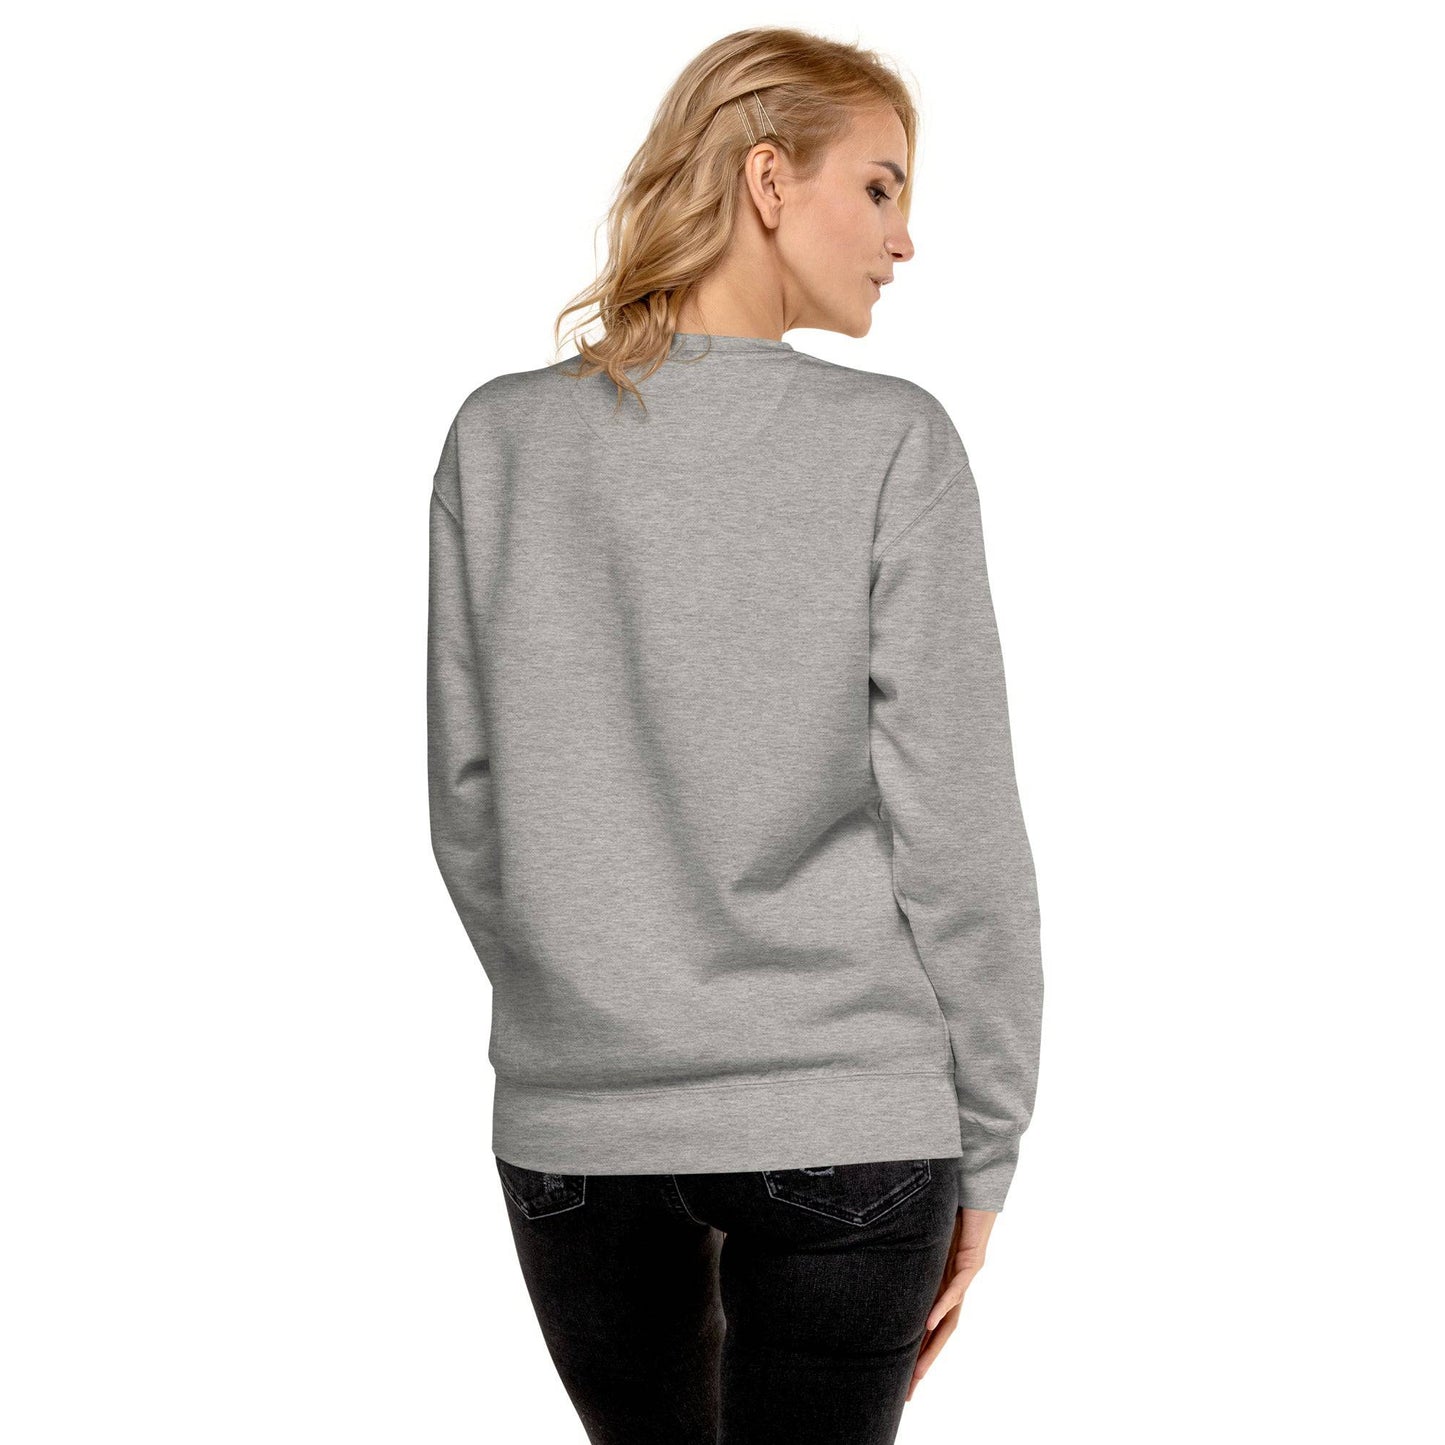 Love Premium Sweatshirt - Pixel Gallery